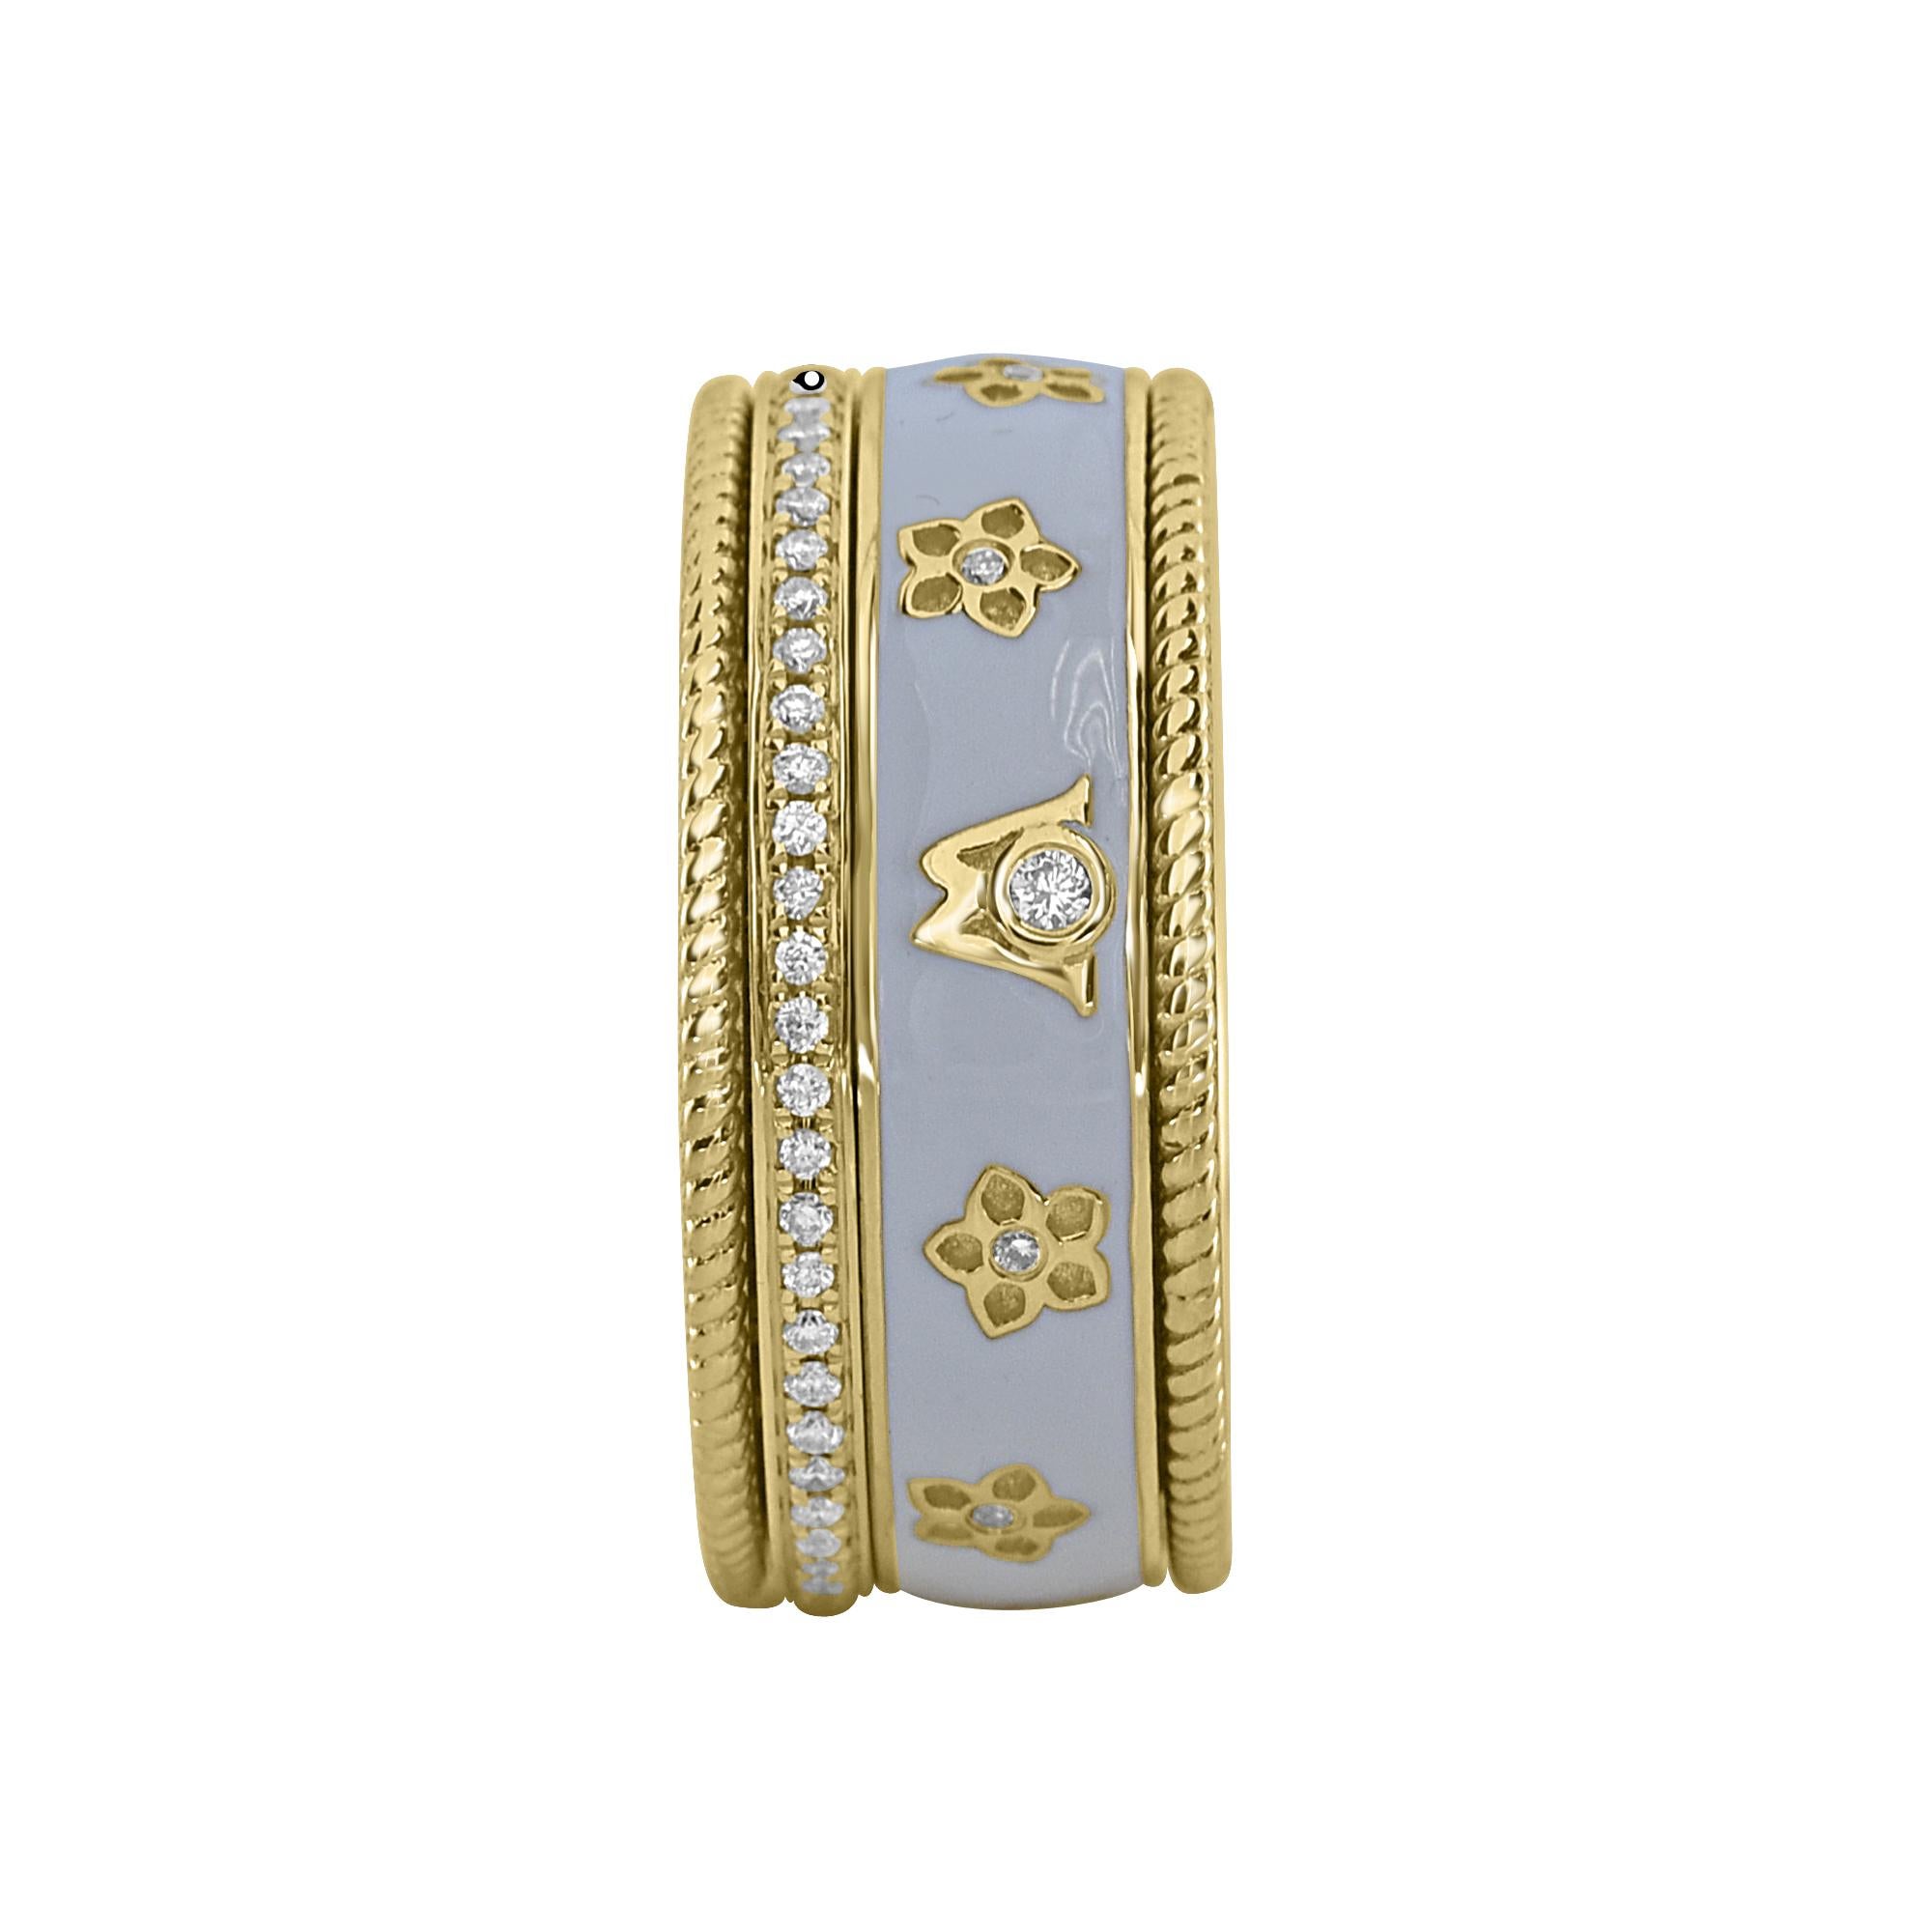 Contemporary 0.28 Carat White Diamond Enamel Floral Motif Ring Set in 18 Karat Yellow Gold